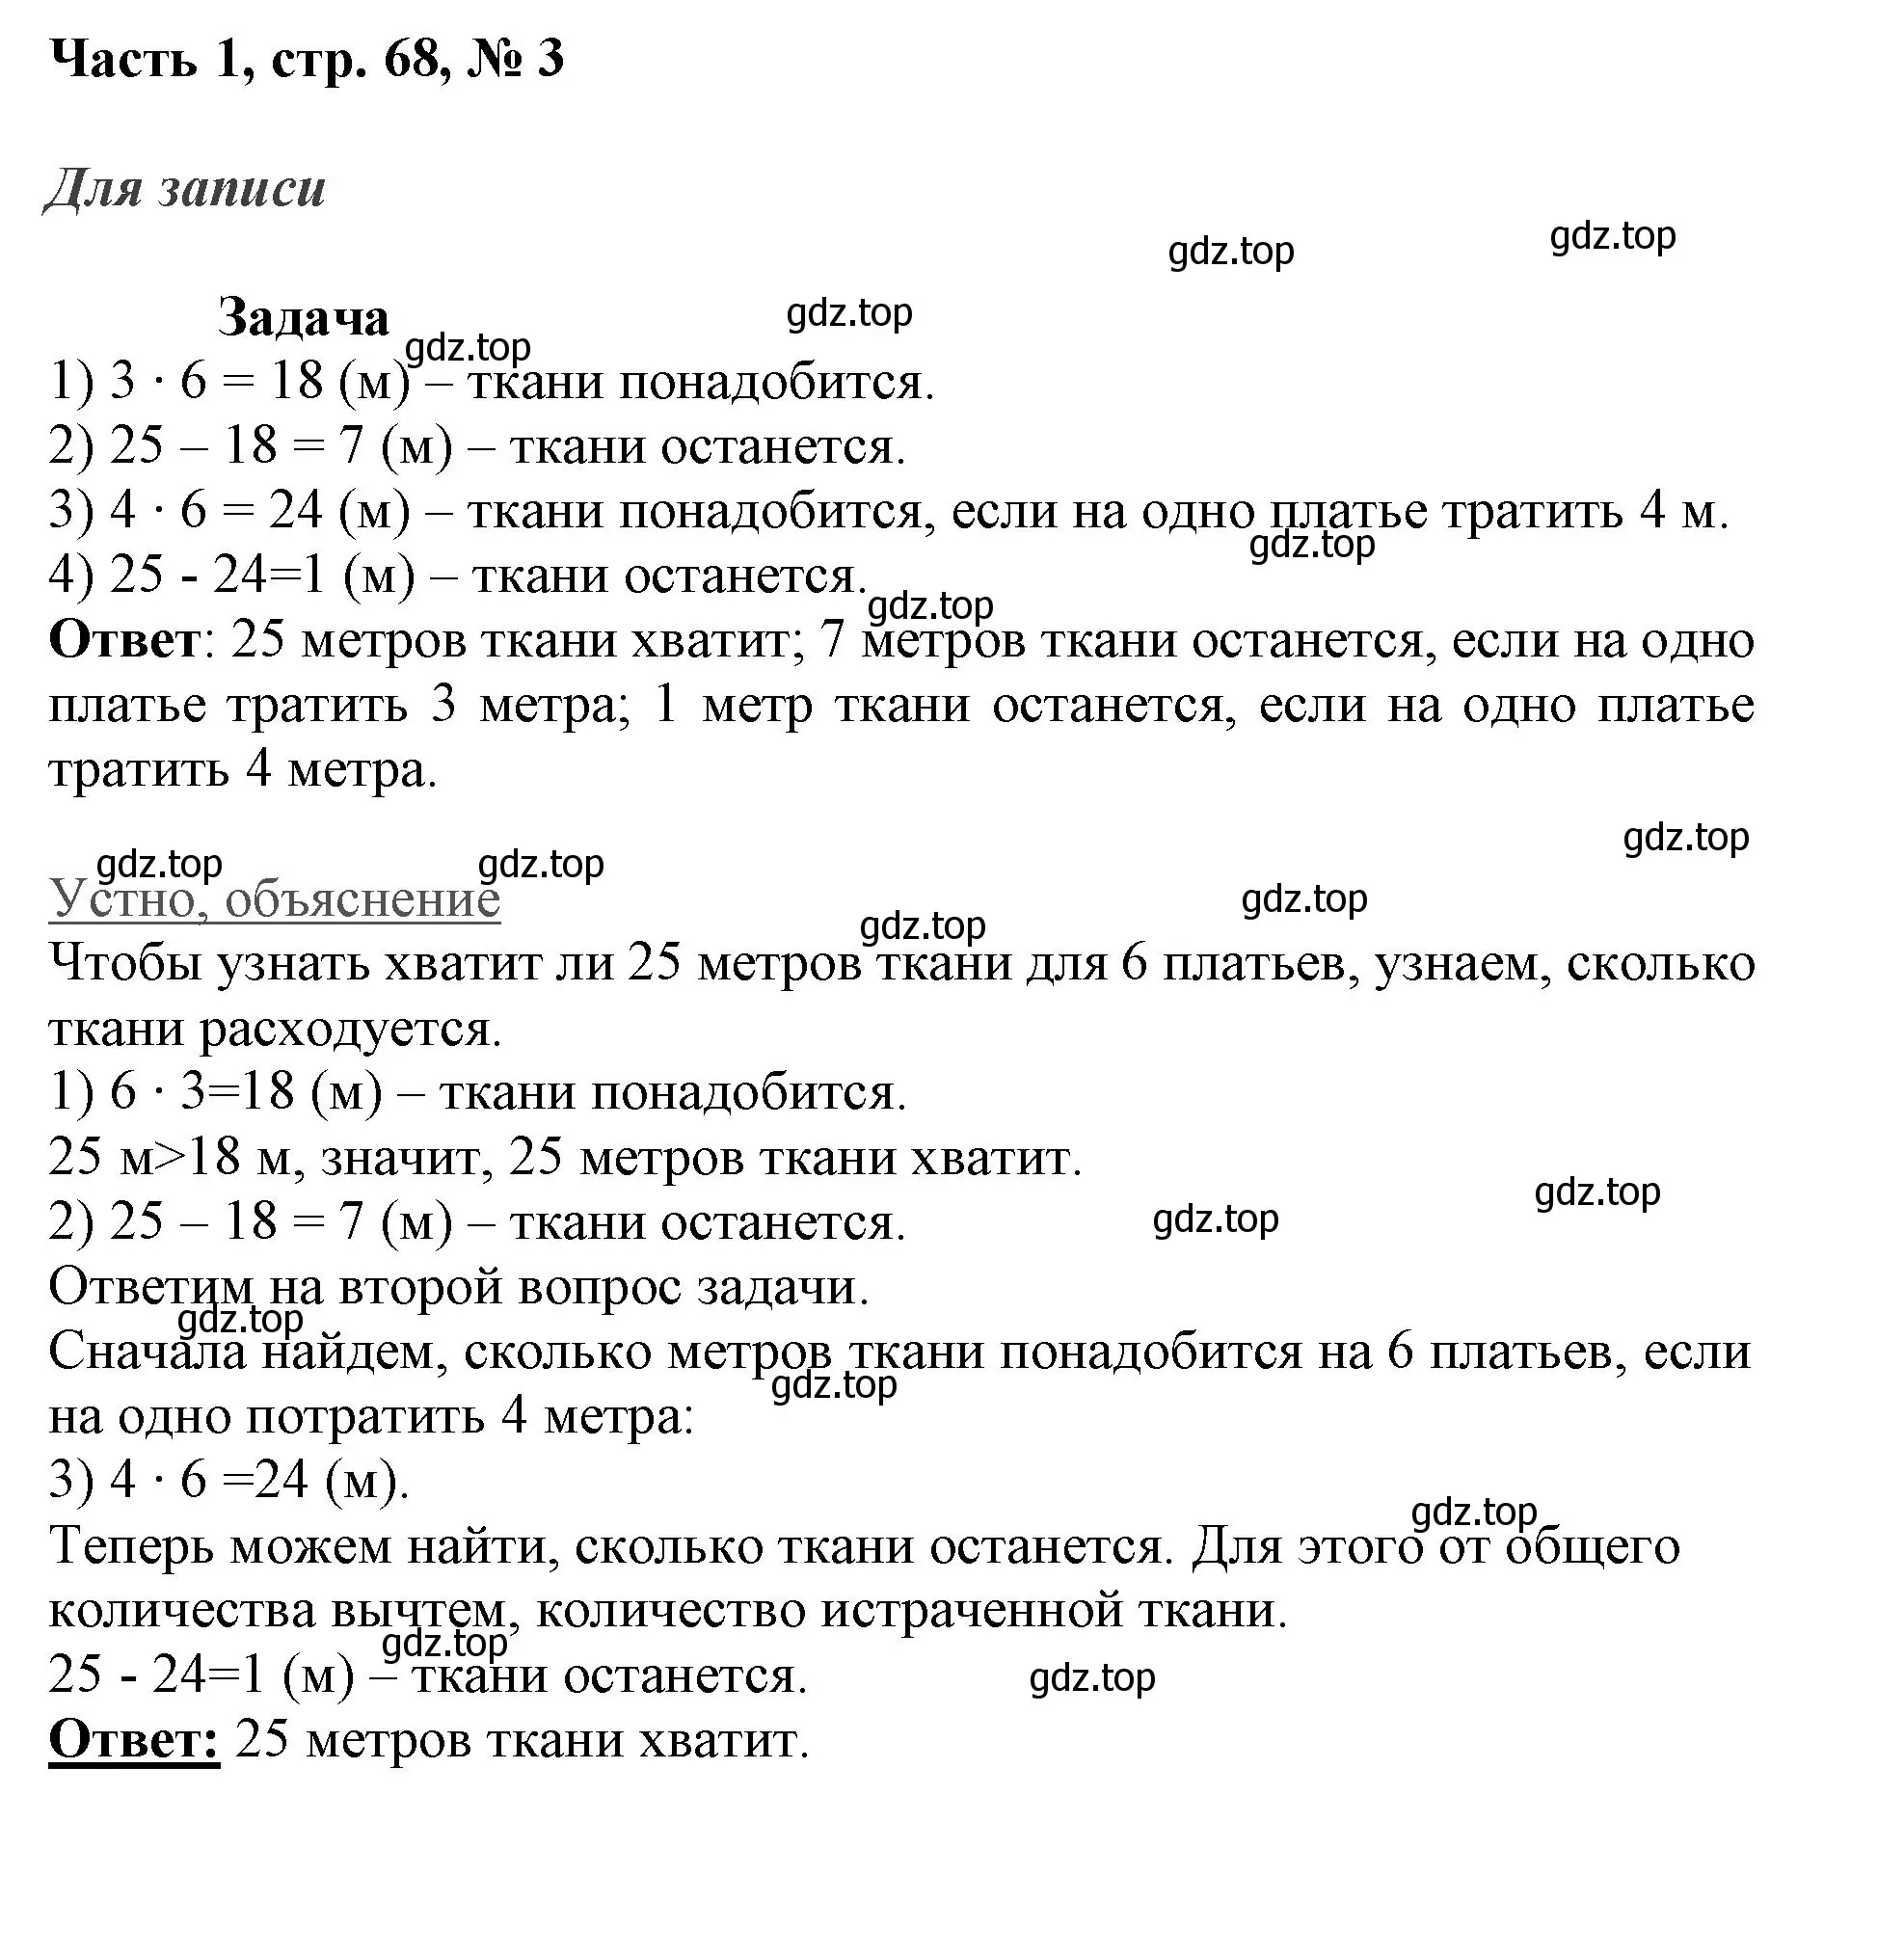 Решение номер 3 (страница 68) гдз по математике 3 класс Моро, Бантова, учебник 1 часть